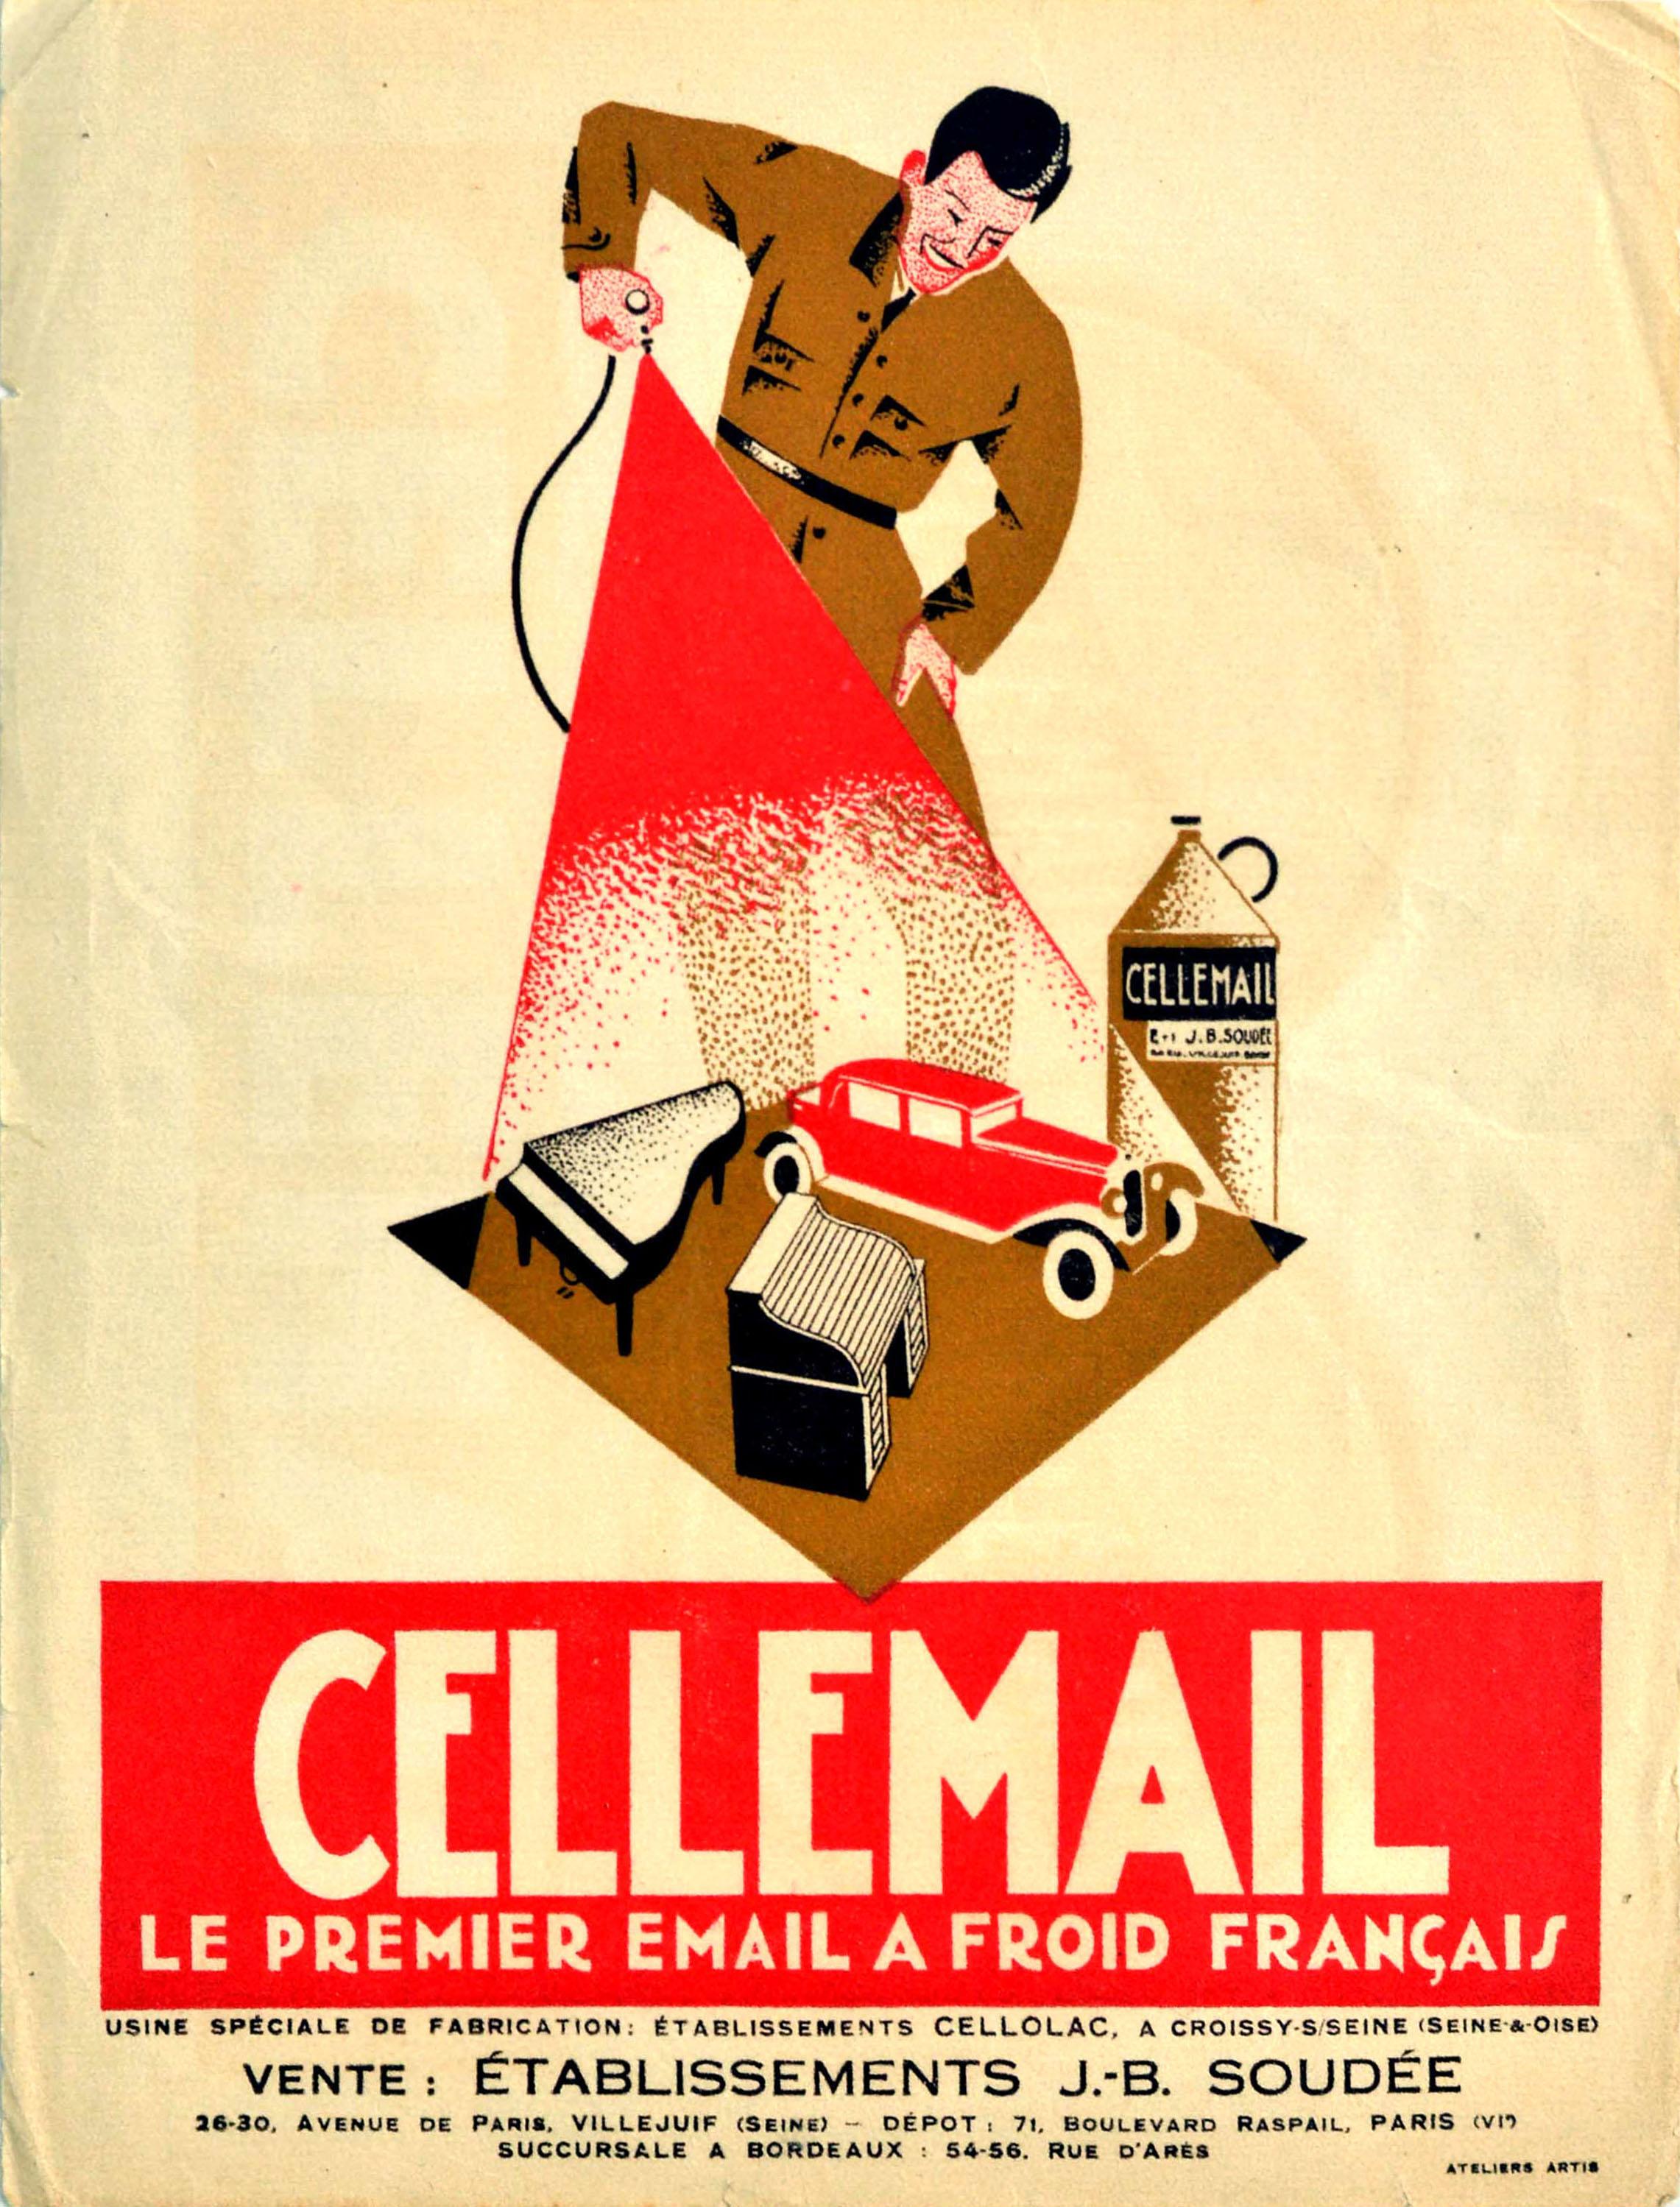 Ateliers Artis Print - Original Antique Poster Cellemail Le Premier Email A Froid Francais Enamel Paint